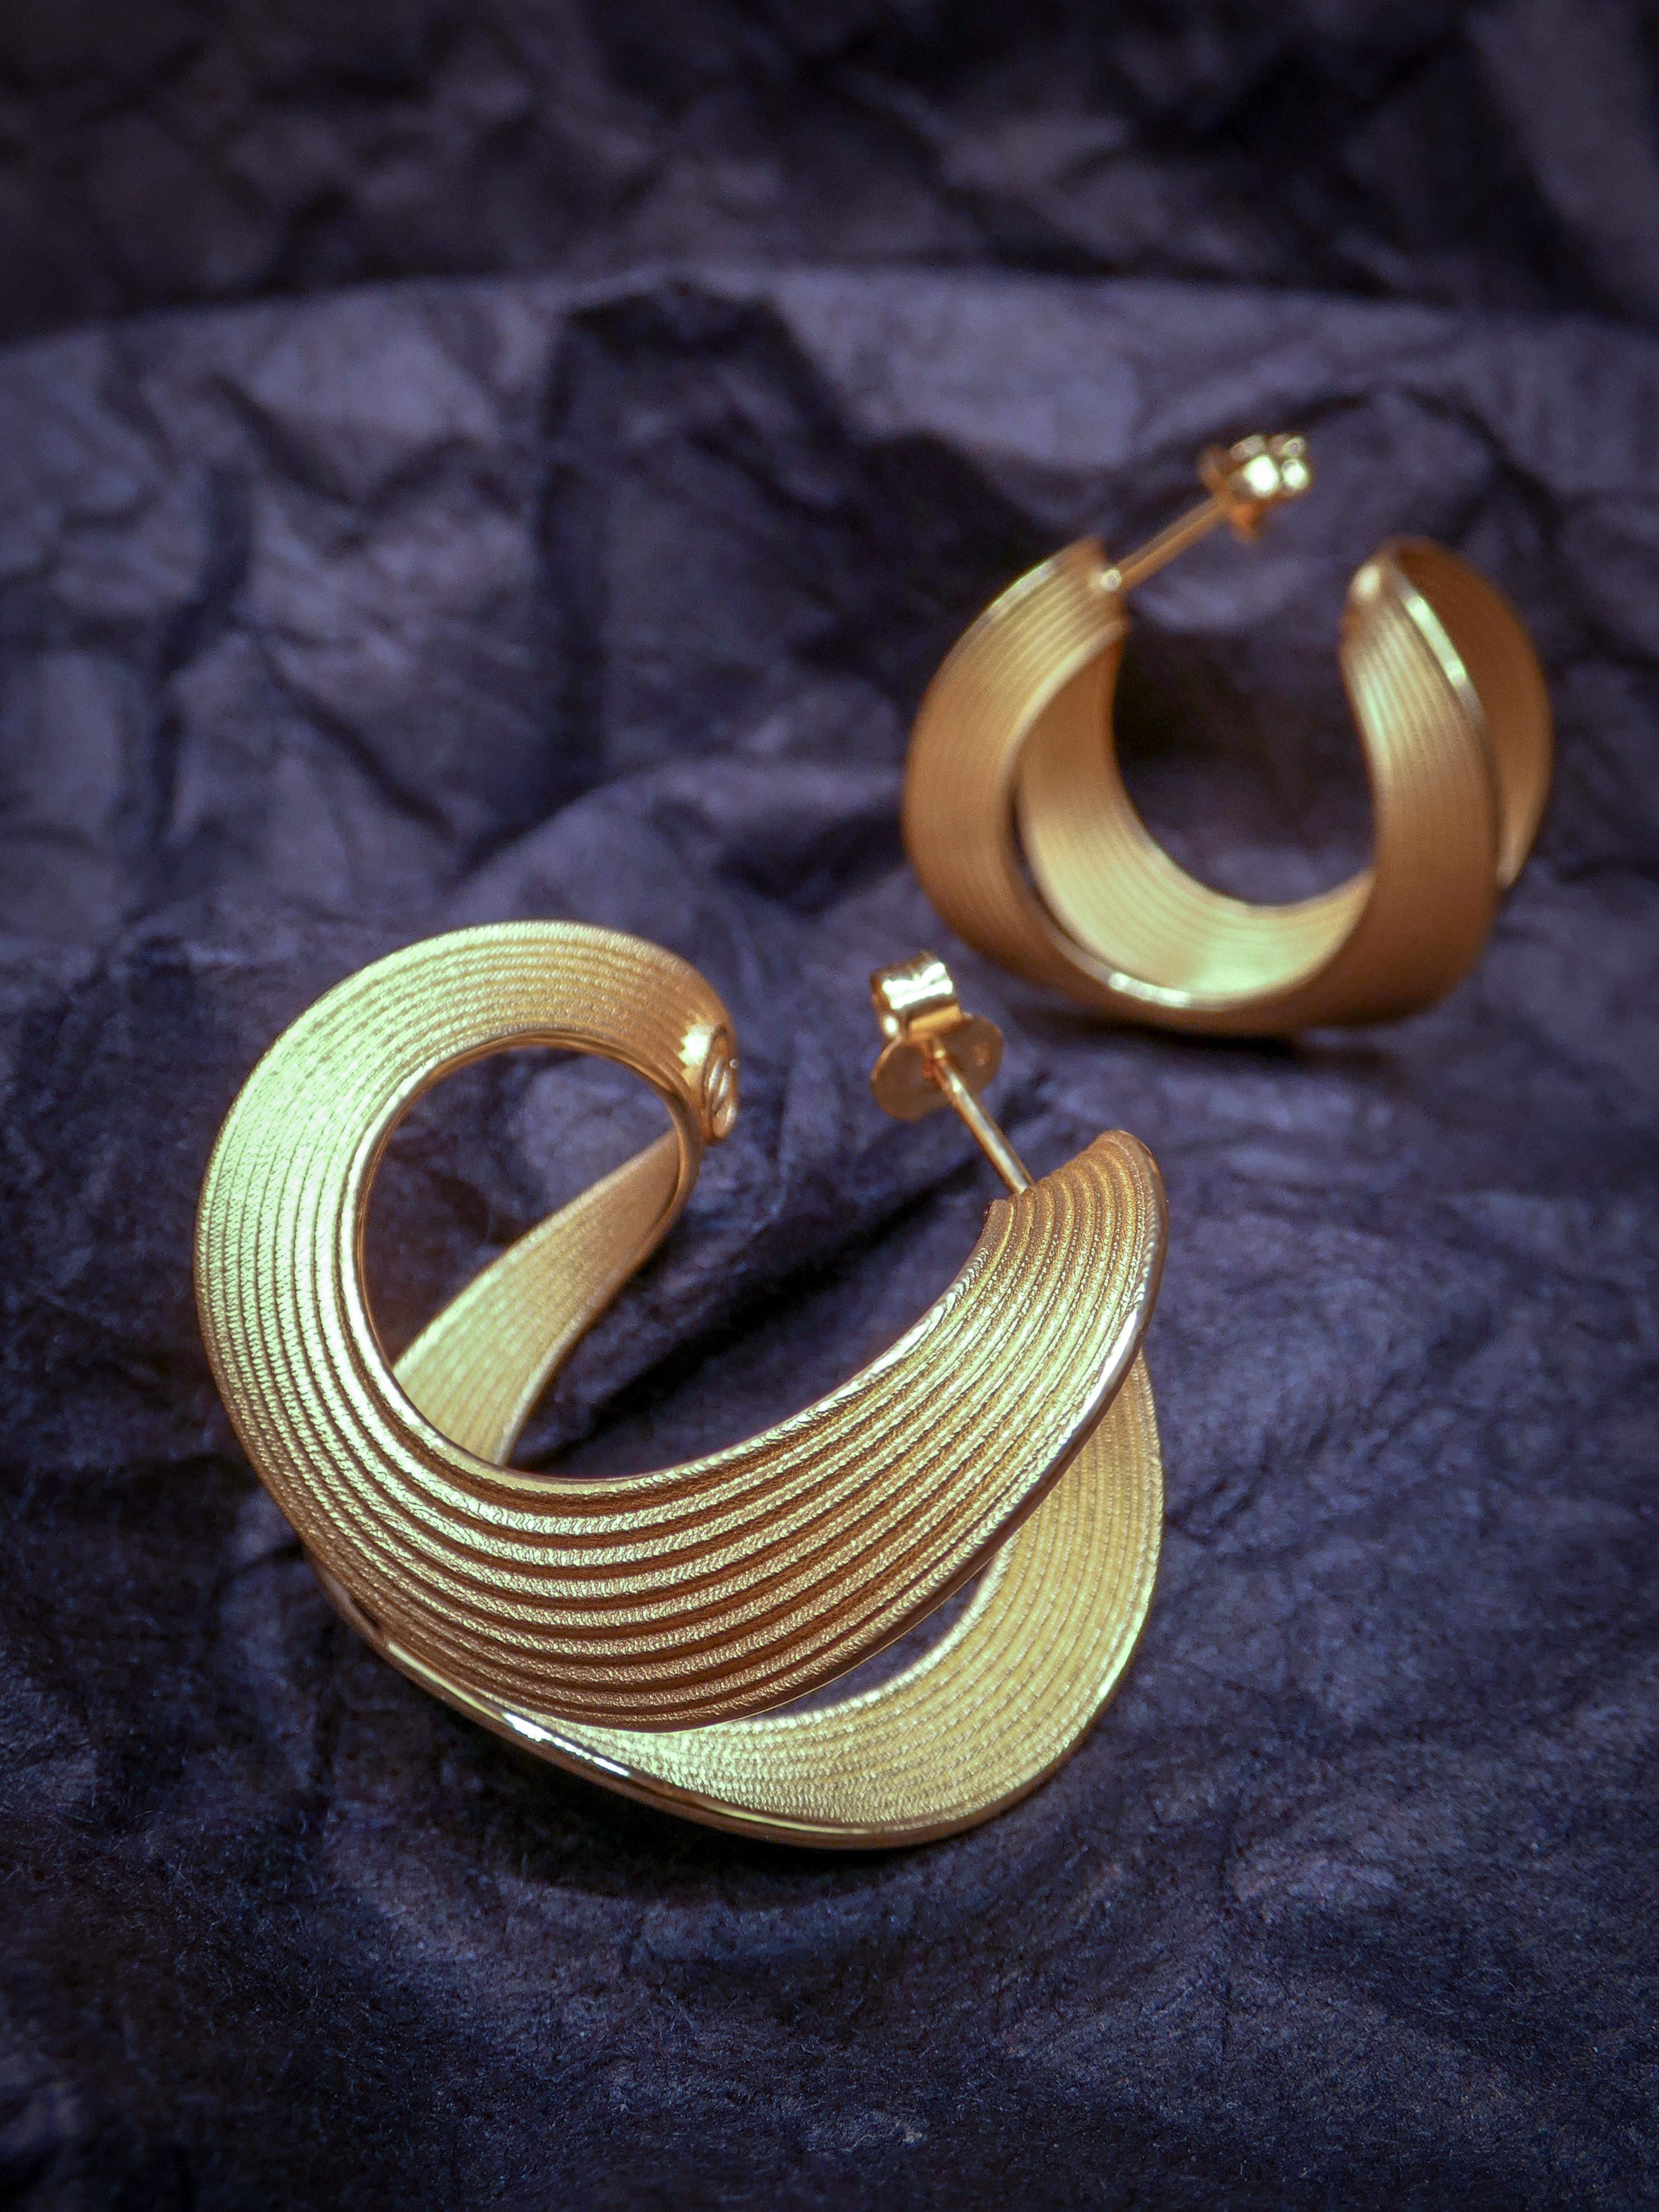 30 mm Durchmesser schöne Band Ohrringe in poliertem und rohem massivem Gold 14k gefertigt.
Erhältlich in Gelbgold, Roségold und Weißgold 14K und 18k auf Anfrage.
Das ungefähre Gesamtgewicht beträgt 15 Gramm in 18k 
Die Produktionszeit dieses Juwels